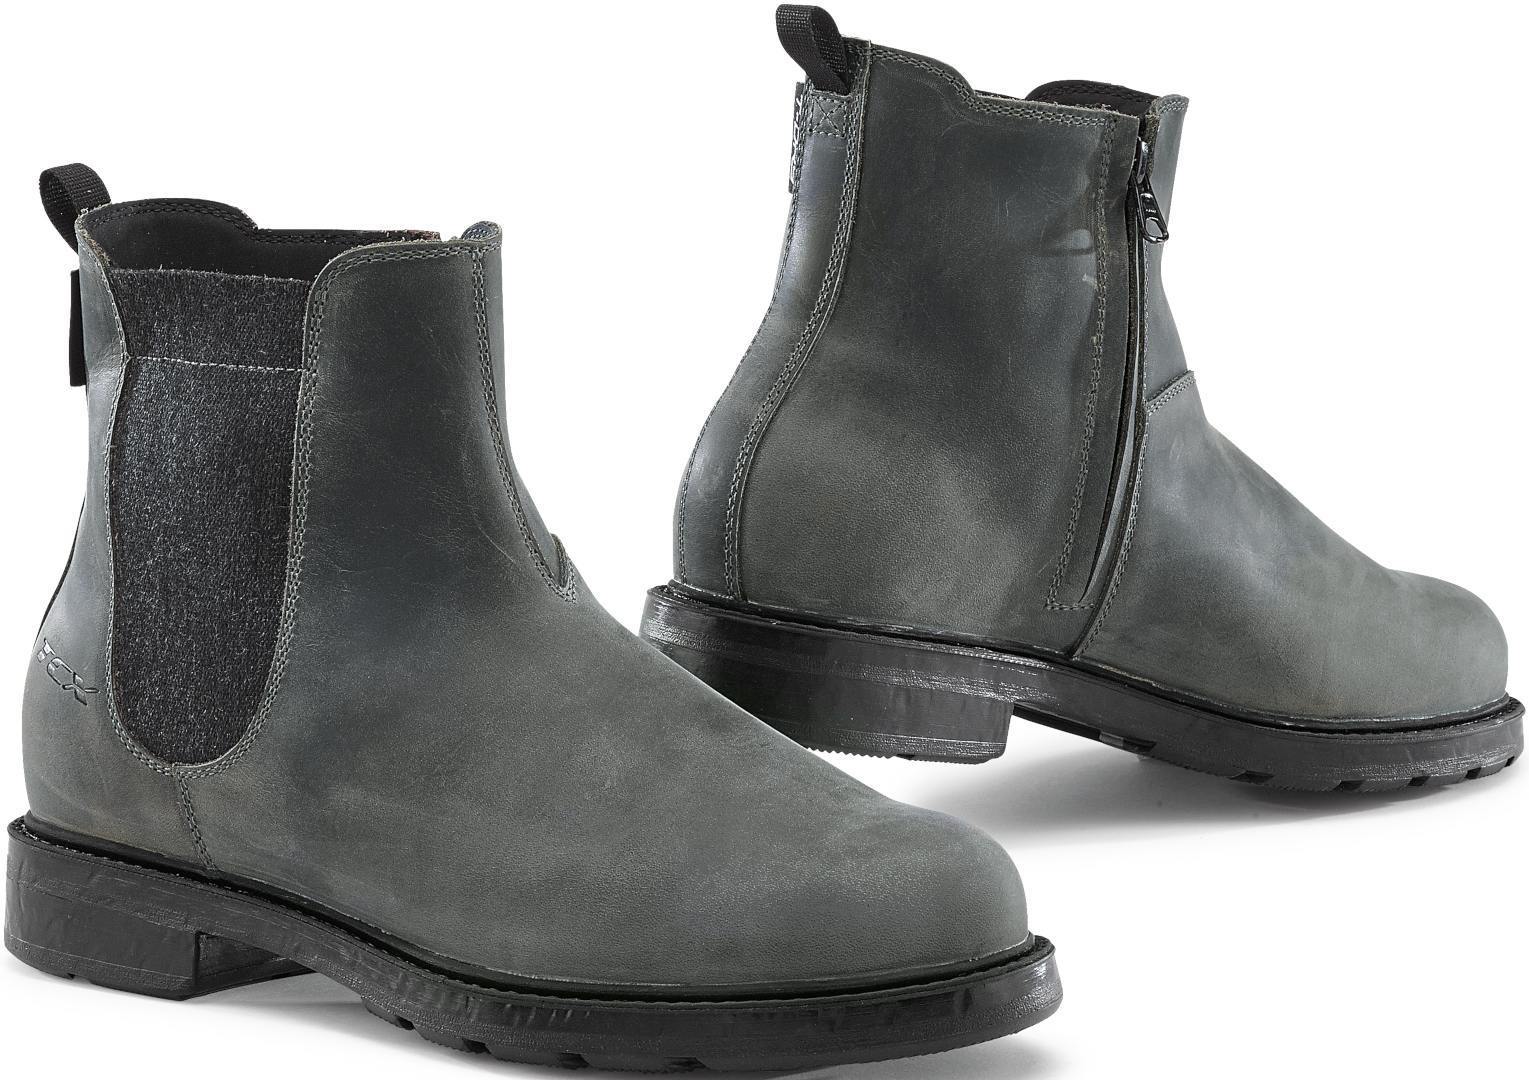 TCX Staten Zapatos de moto impermeables - Negro Gris (45)